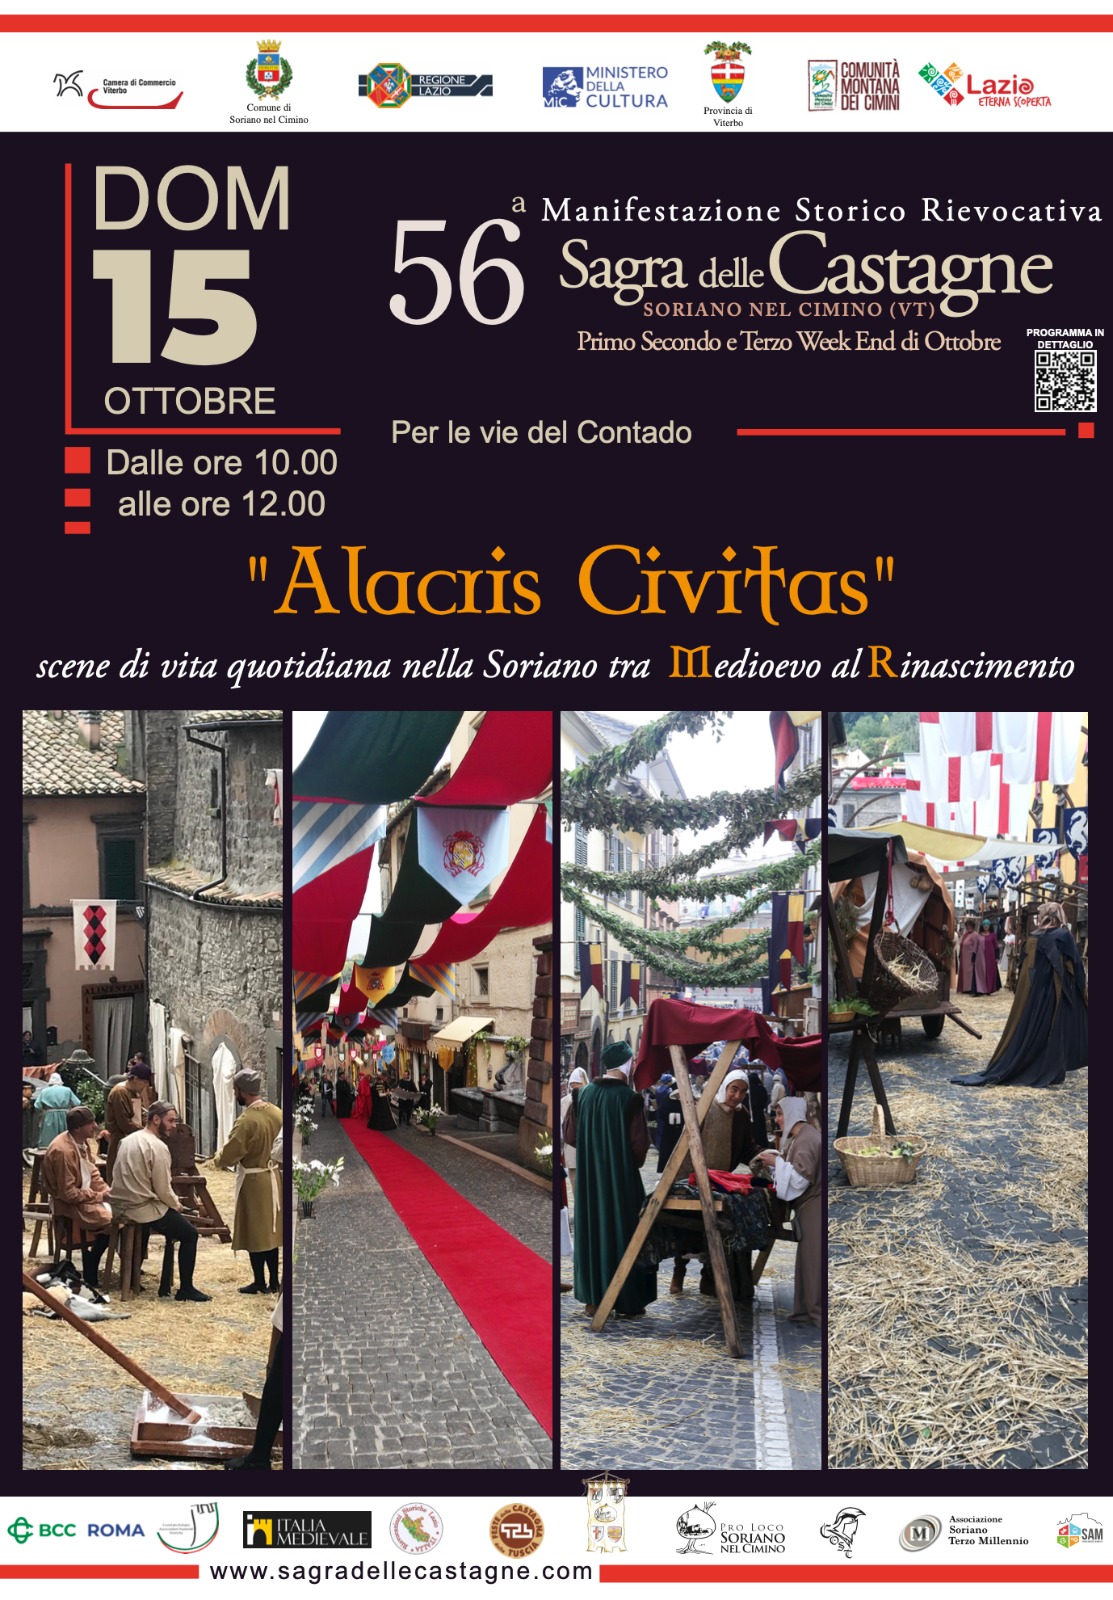 "Alacris Civitas" - 56° Sagra delle Castagne